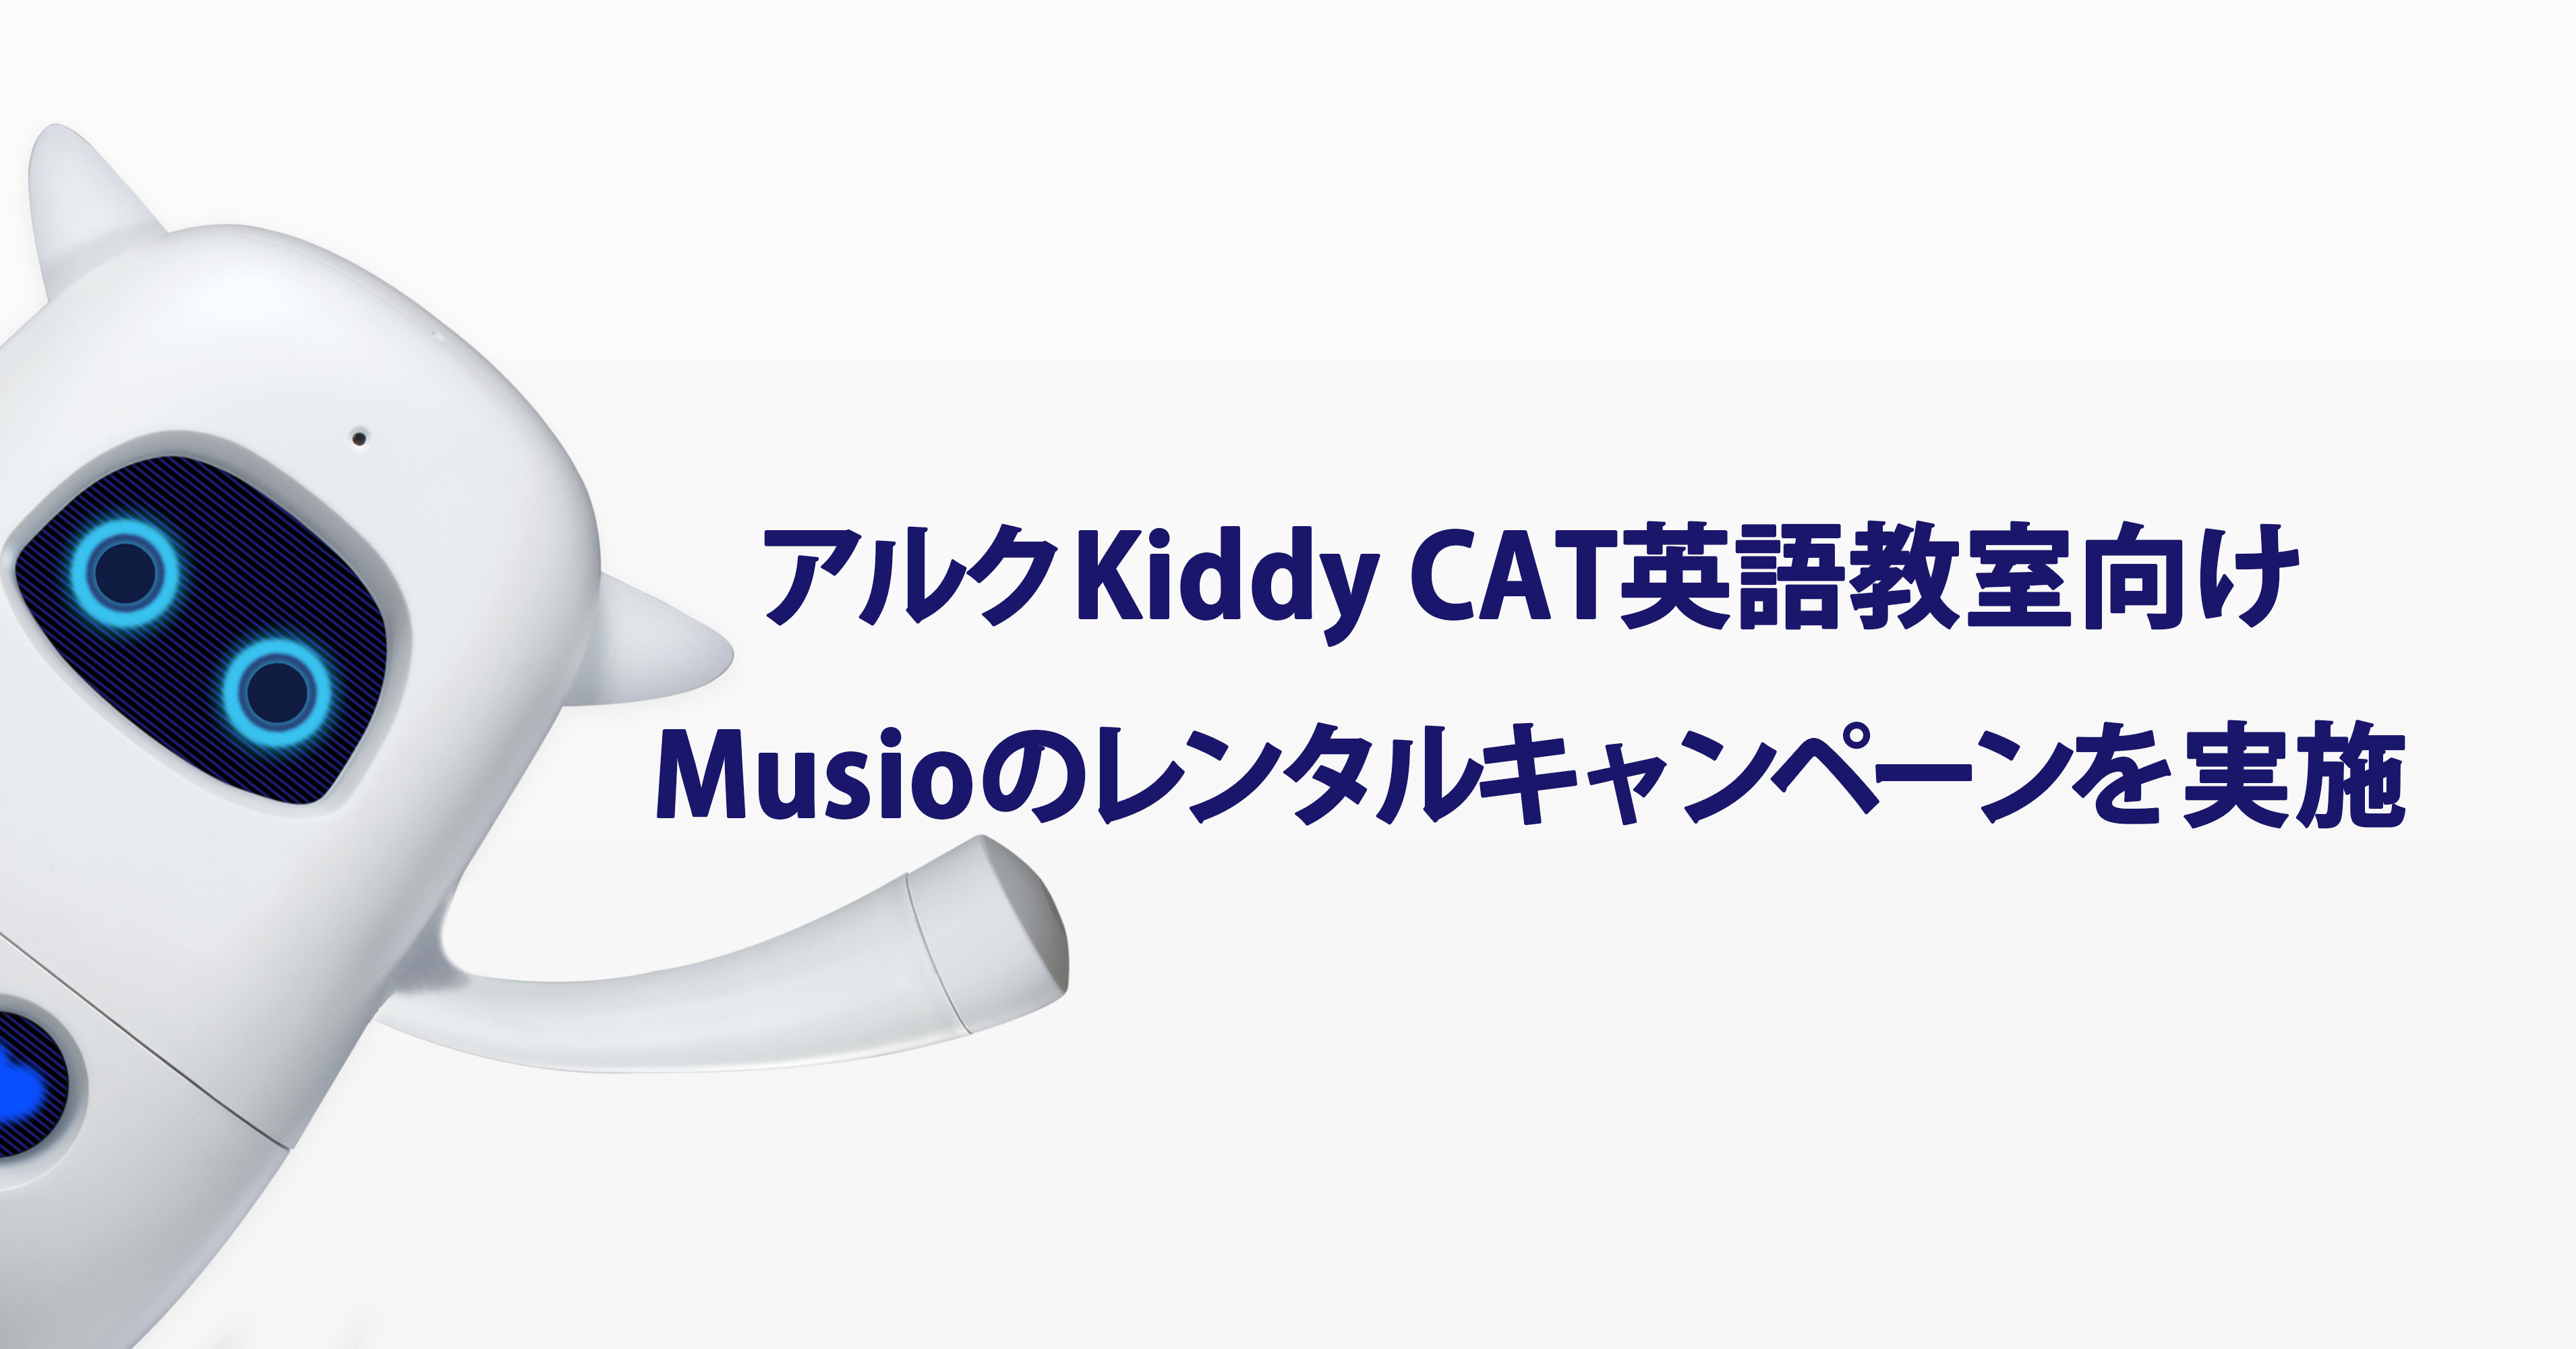 アルク Kiddy Cat 英語教室向け Musio English For アルク Kiddy Cat 英語教室 スピーキング力アップキャンペーン を実施 Aka Corp のプレスリリース